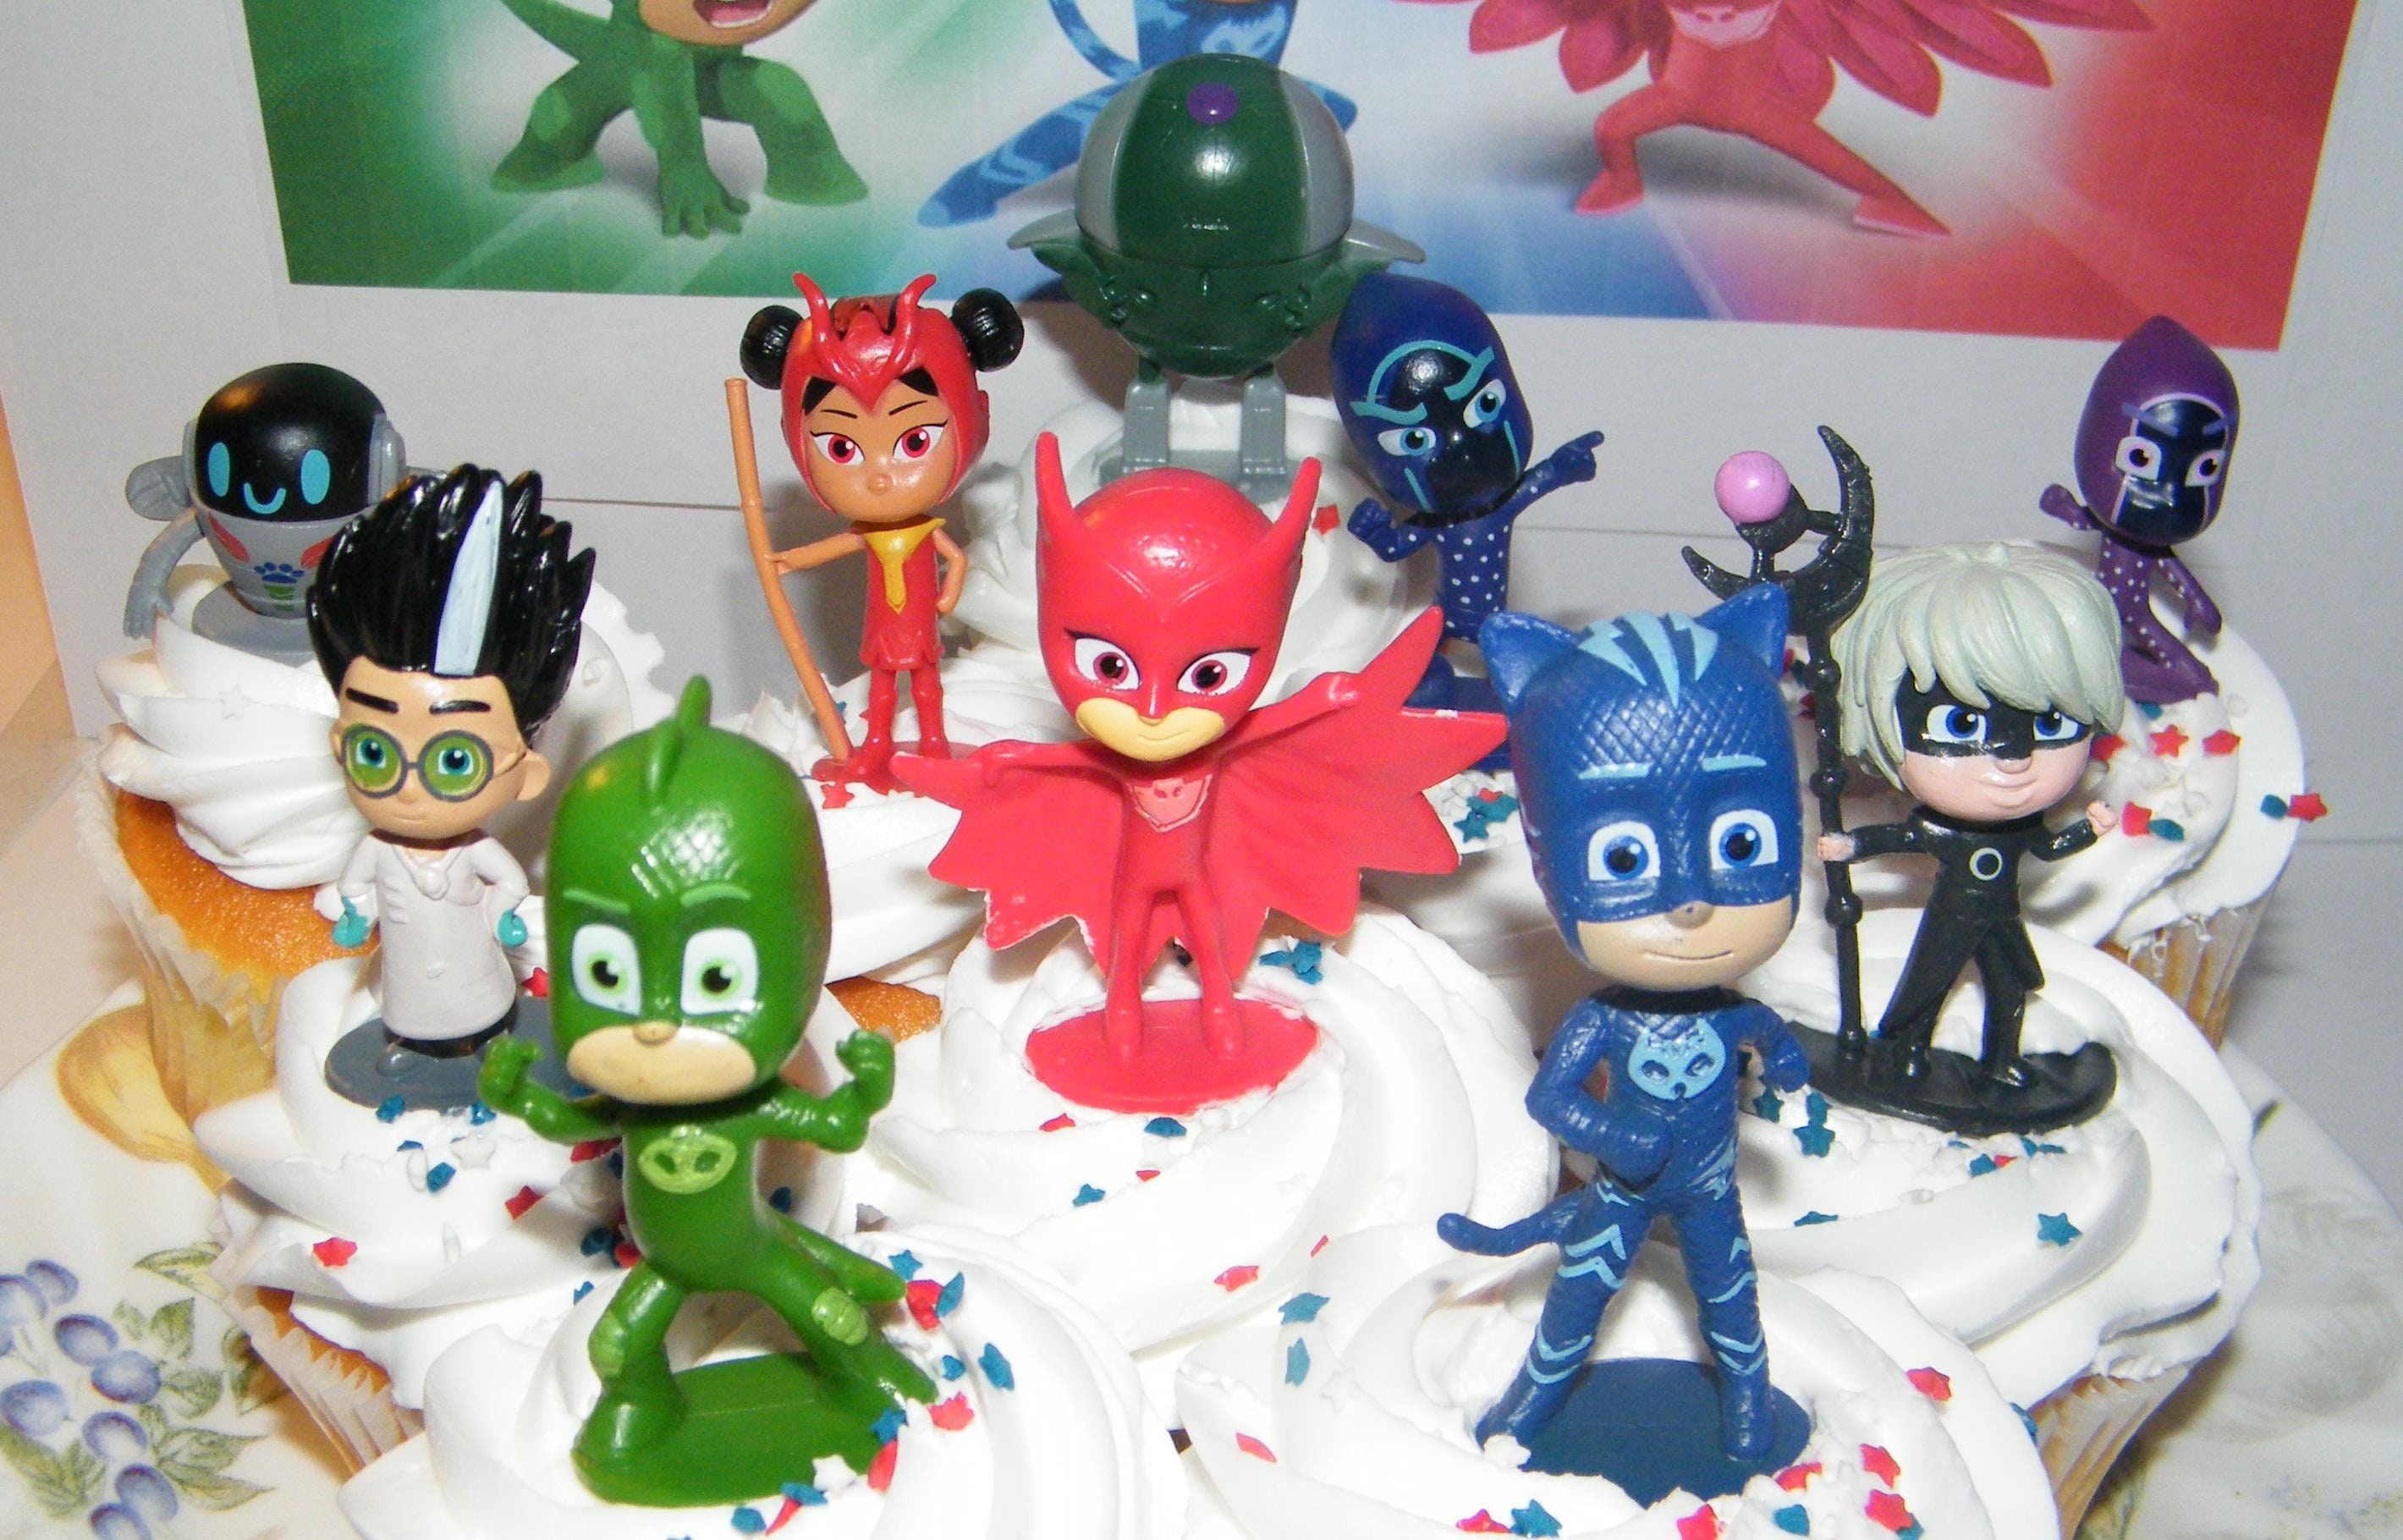 Lot of 11 Disney Junior PJ Masks Toys Figures Cake Toppers Just